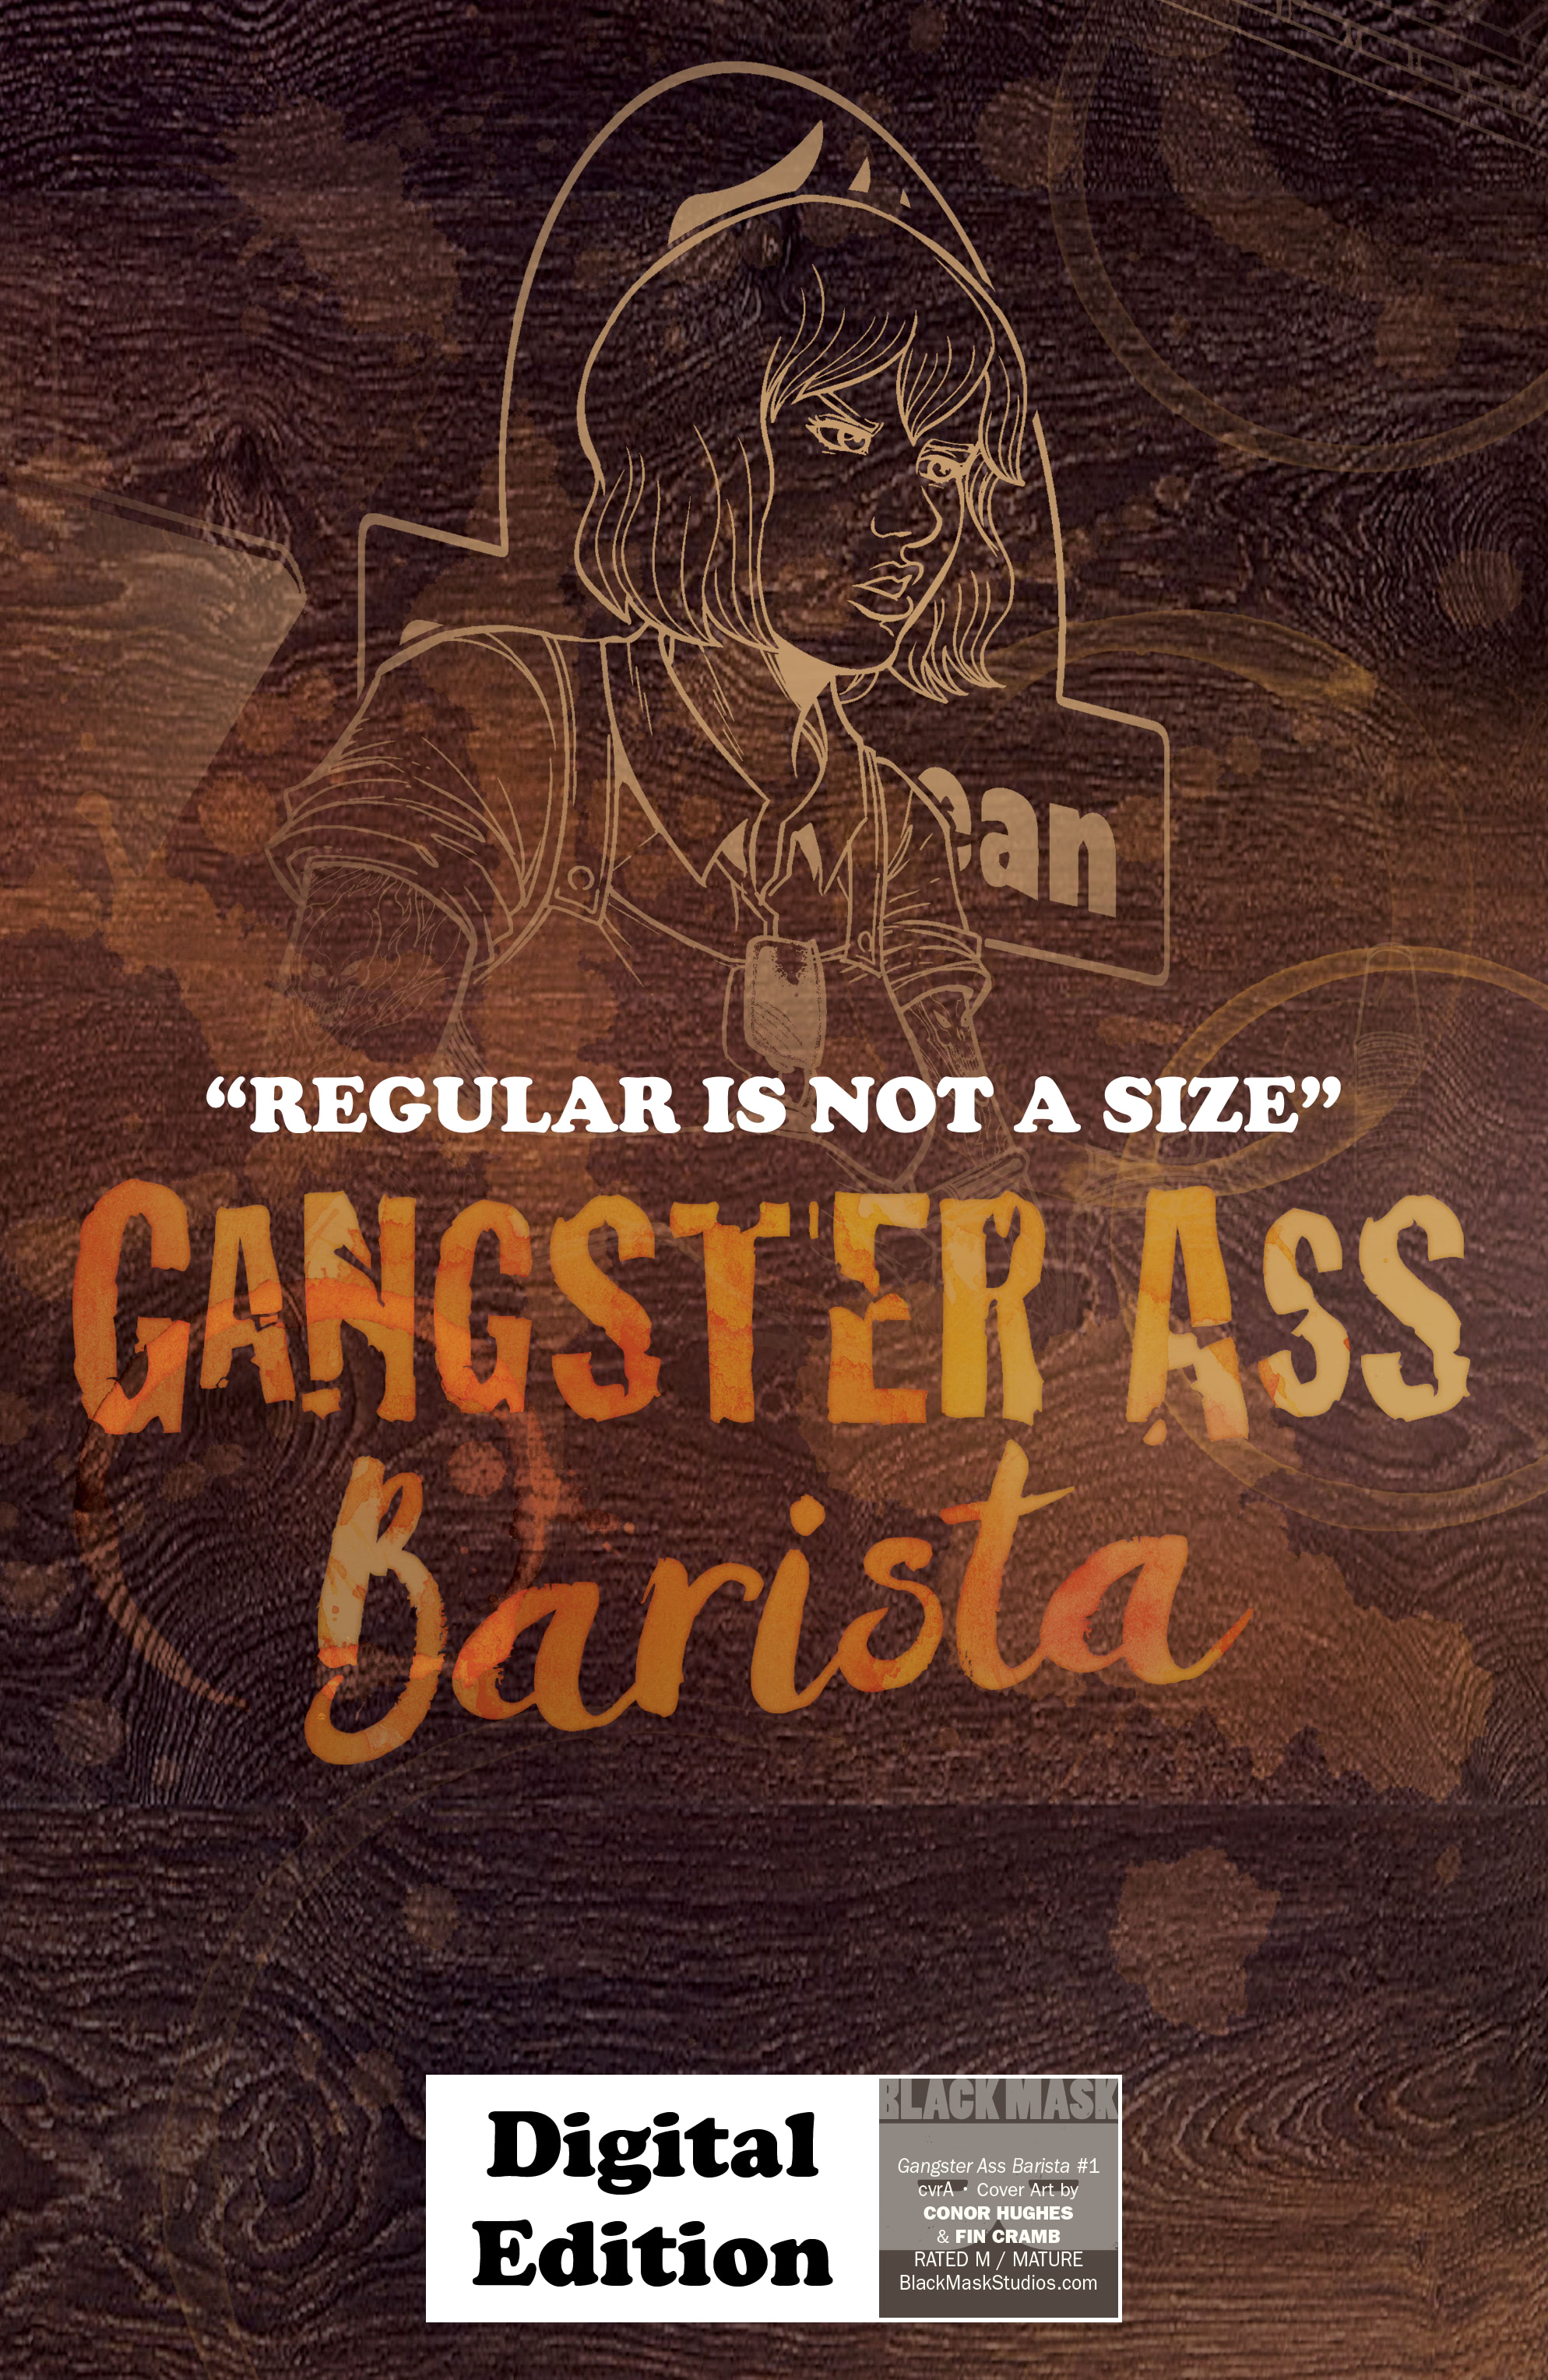 Read online Gangster Ass Barista comic -  Issue #1 - 35